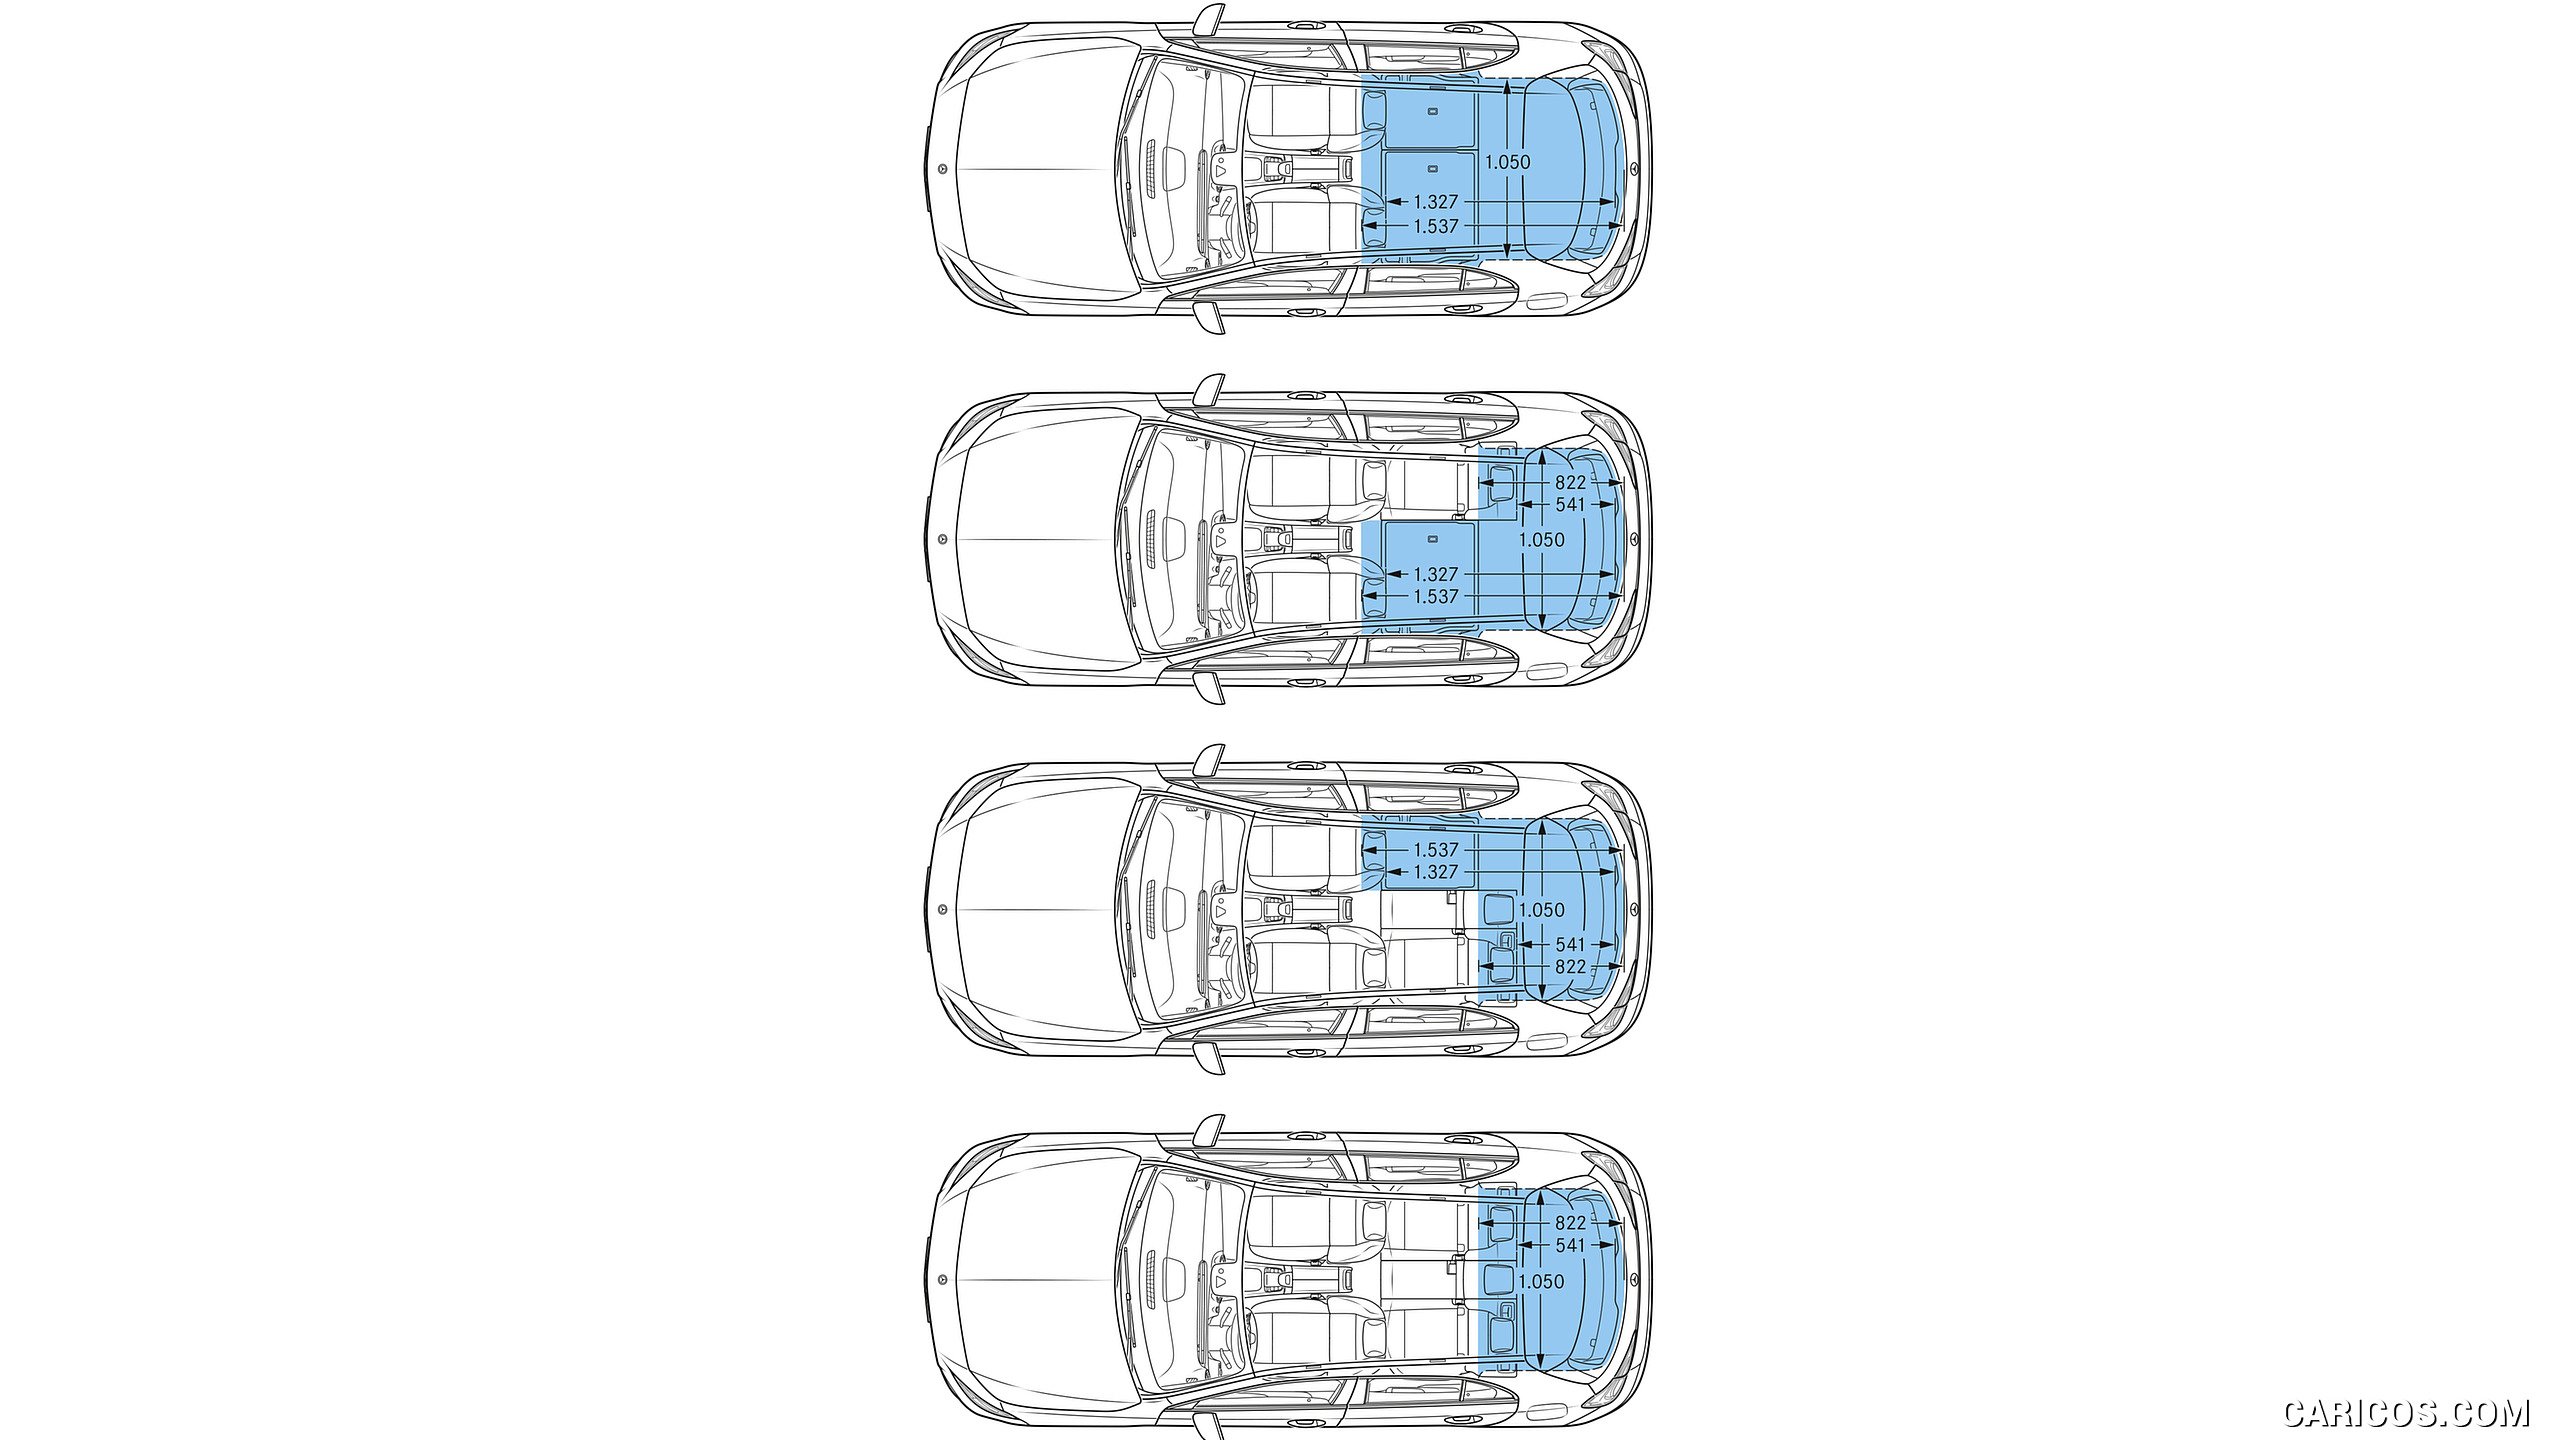 2019 Mercedes-Benz A-Class - Dimensions, #96 of 181